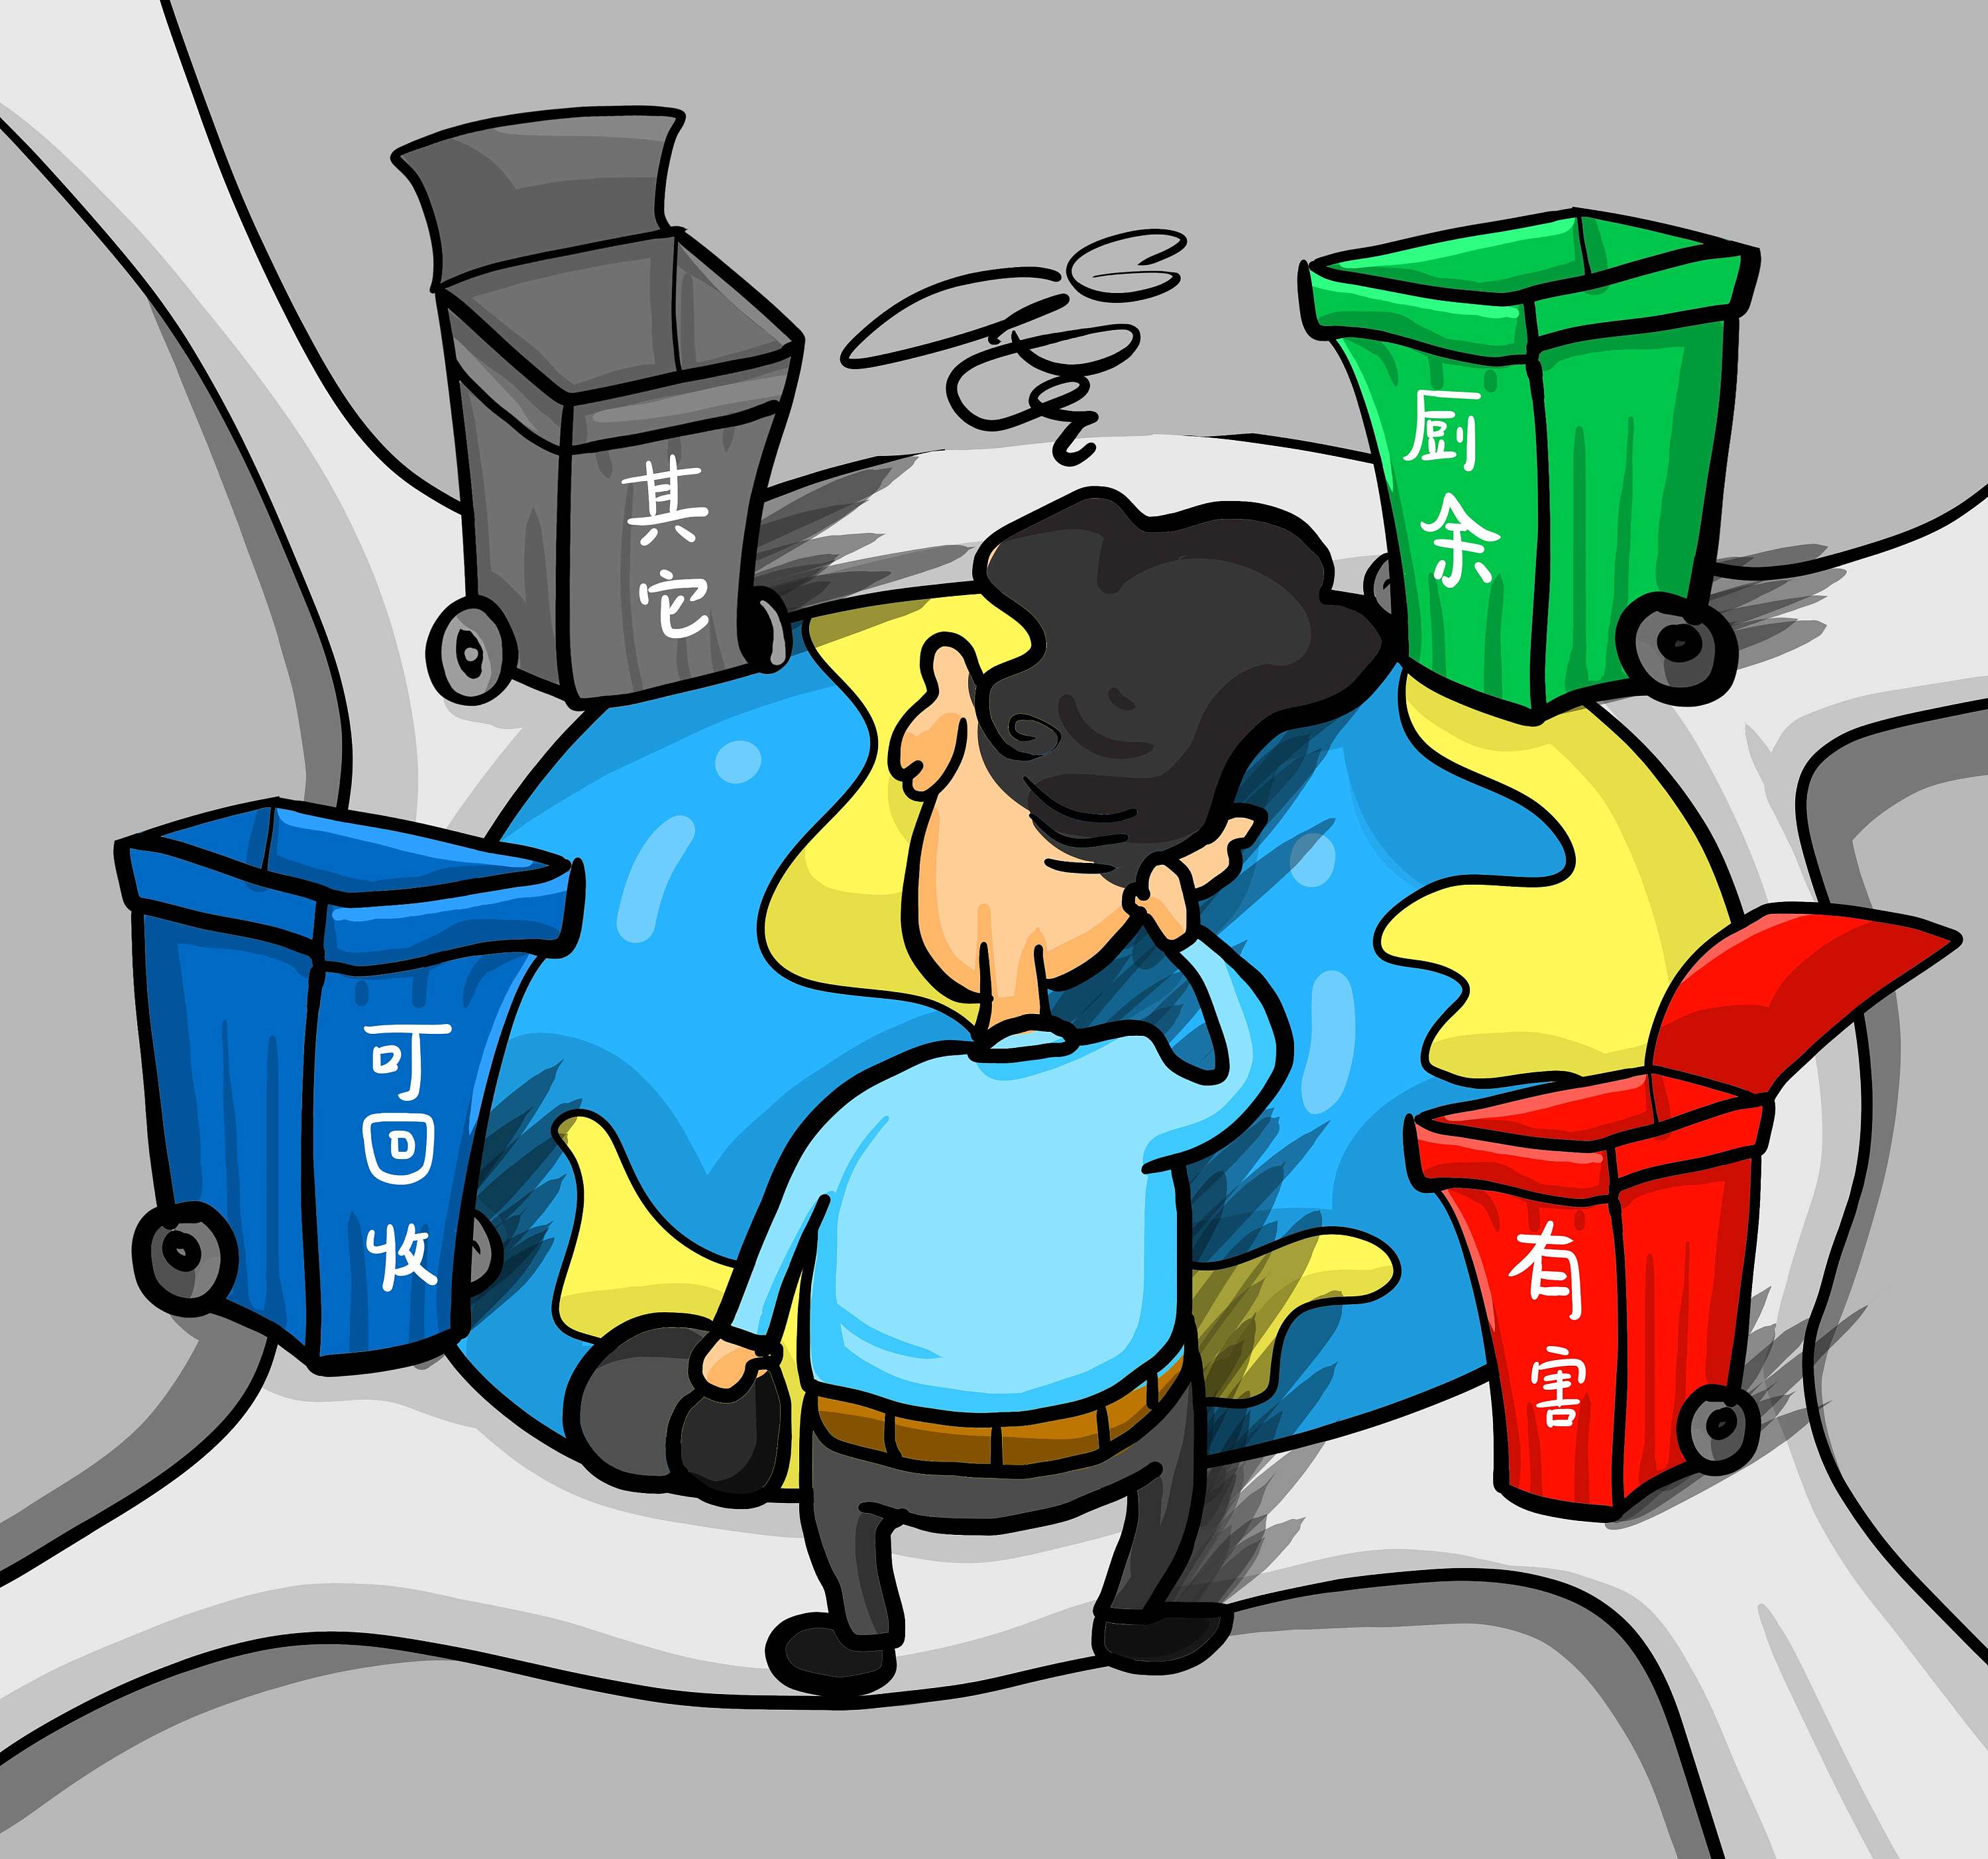 垃圾分类的小朋友插图(垃圾箱、垃圾、人物、回收、废品)扁平化插图_北极熊素材库